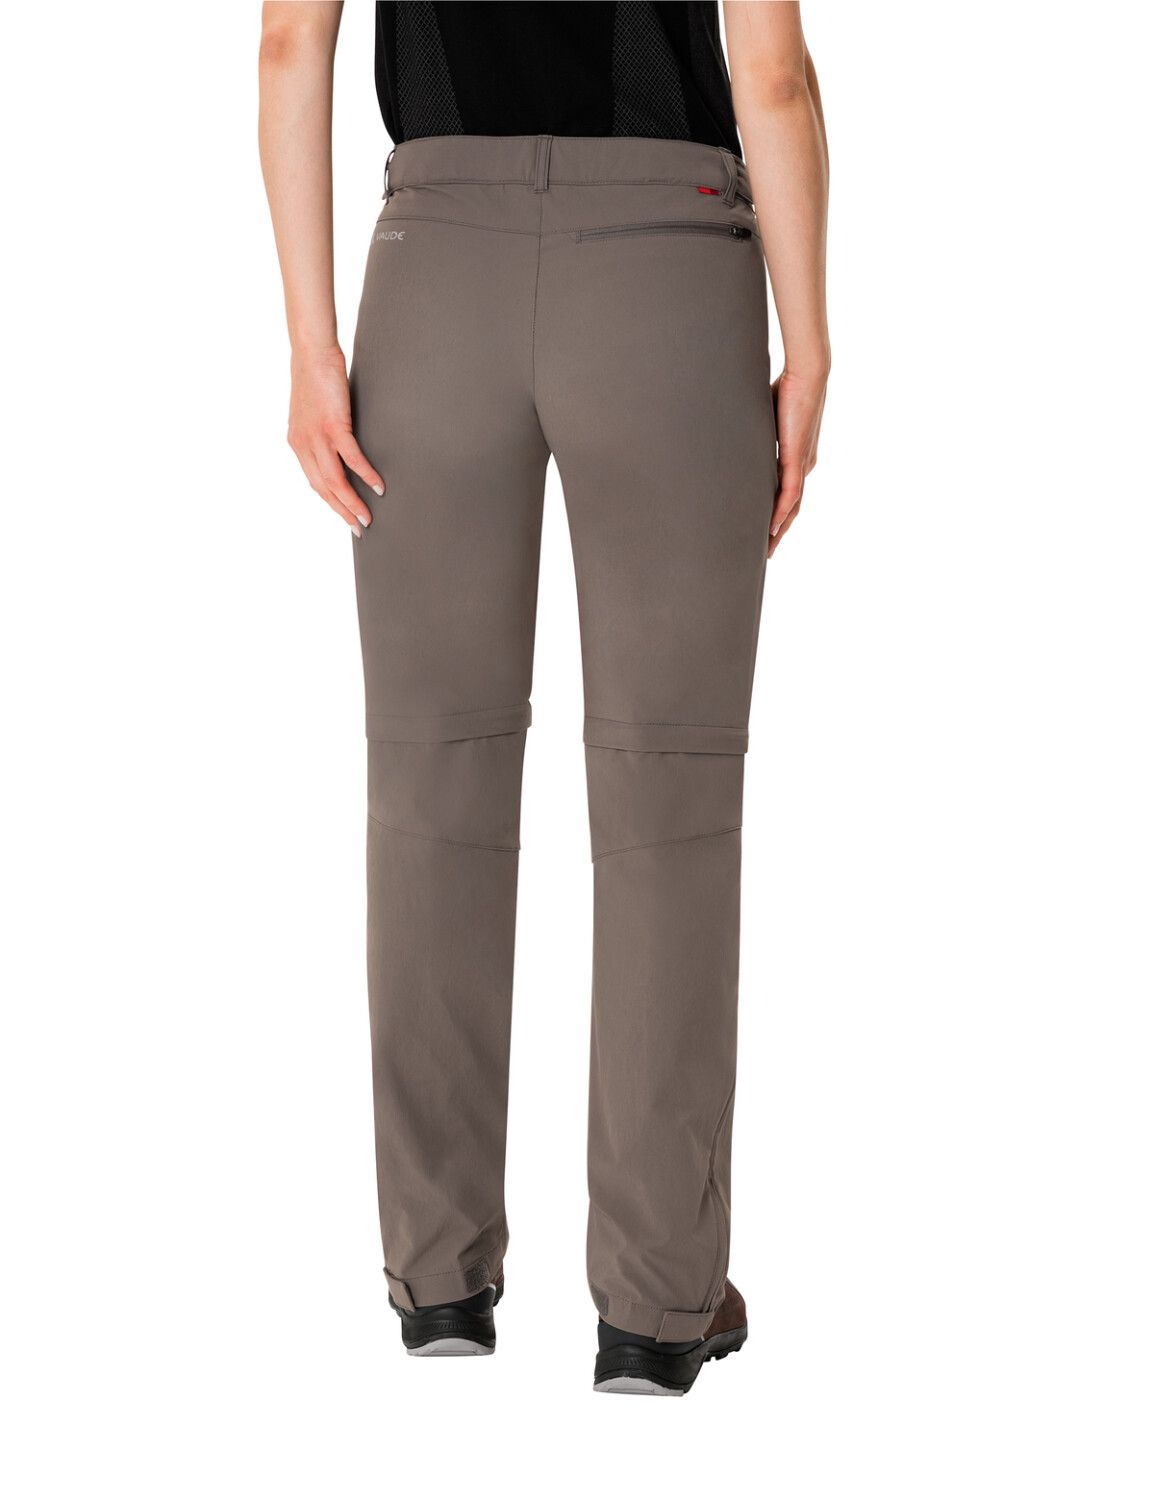 VAUDE Women's Farley Stretch ZO T-Zip Pants (Bild 35)